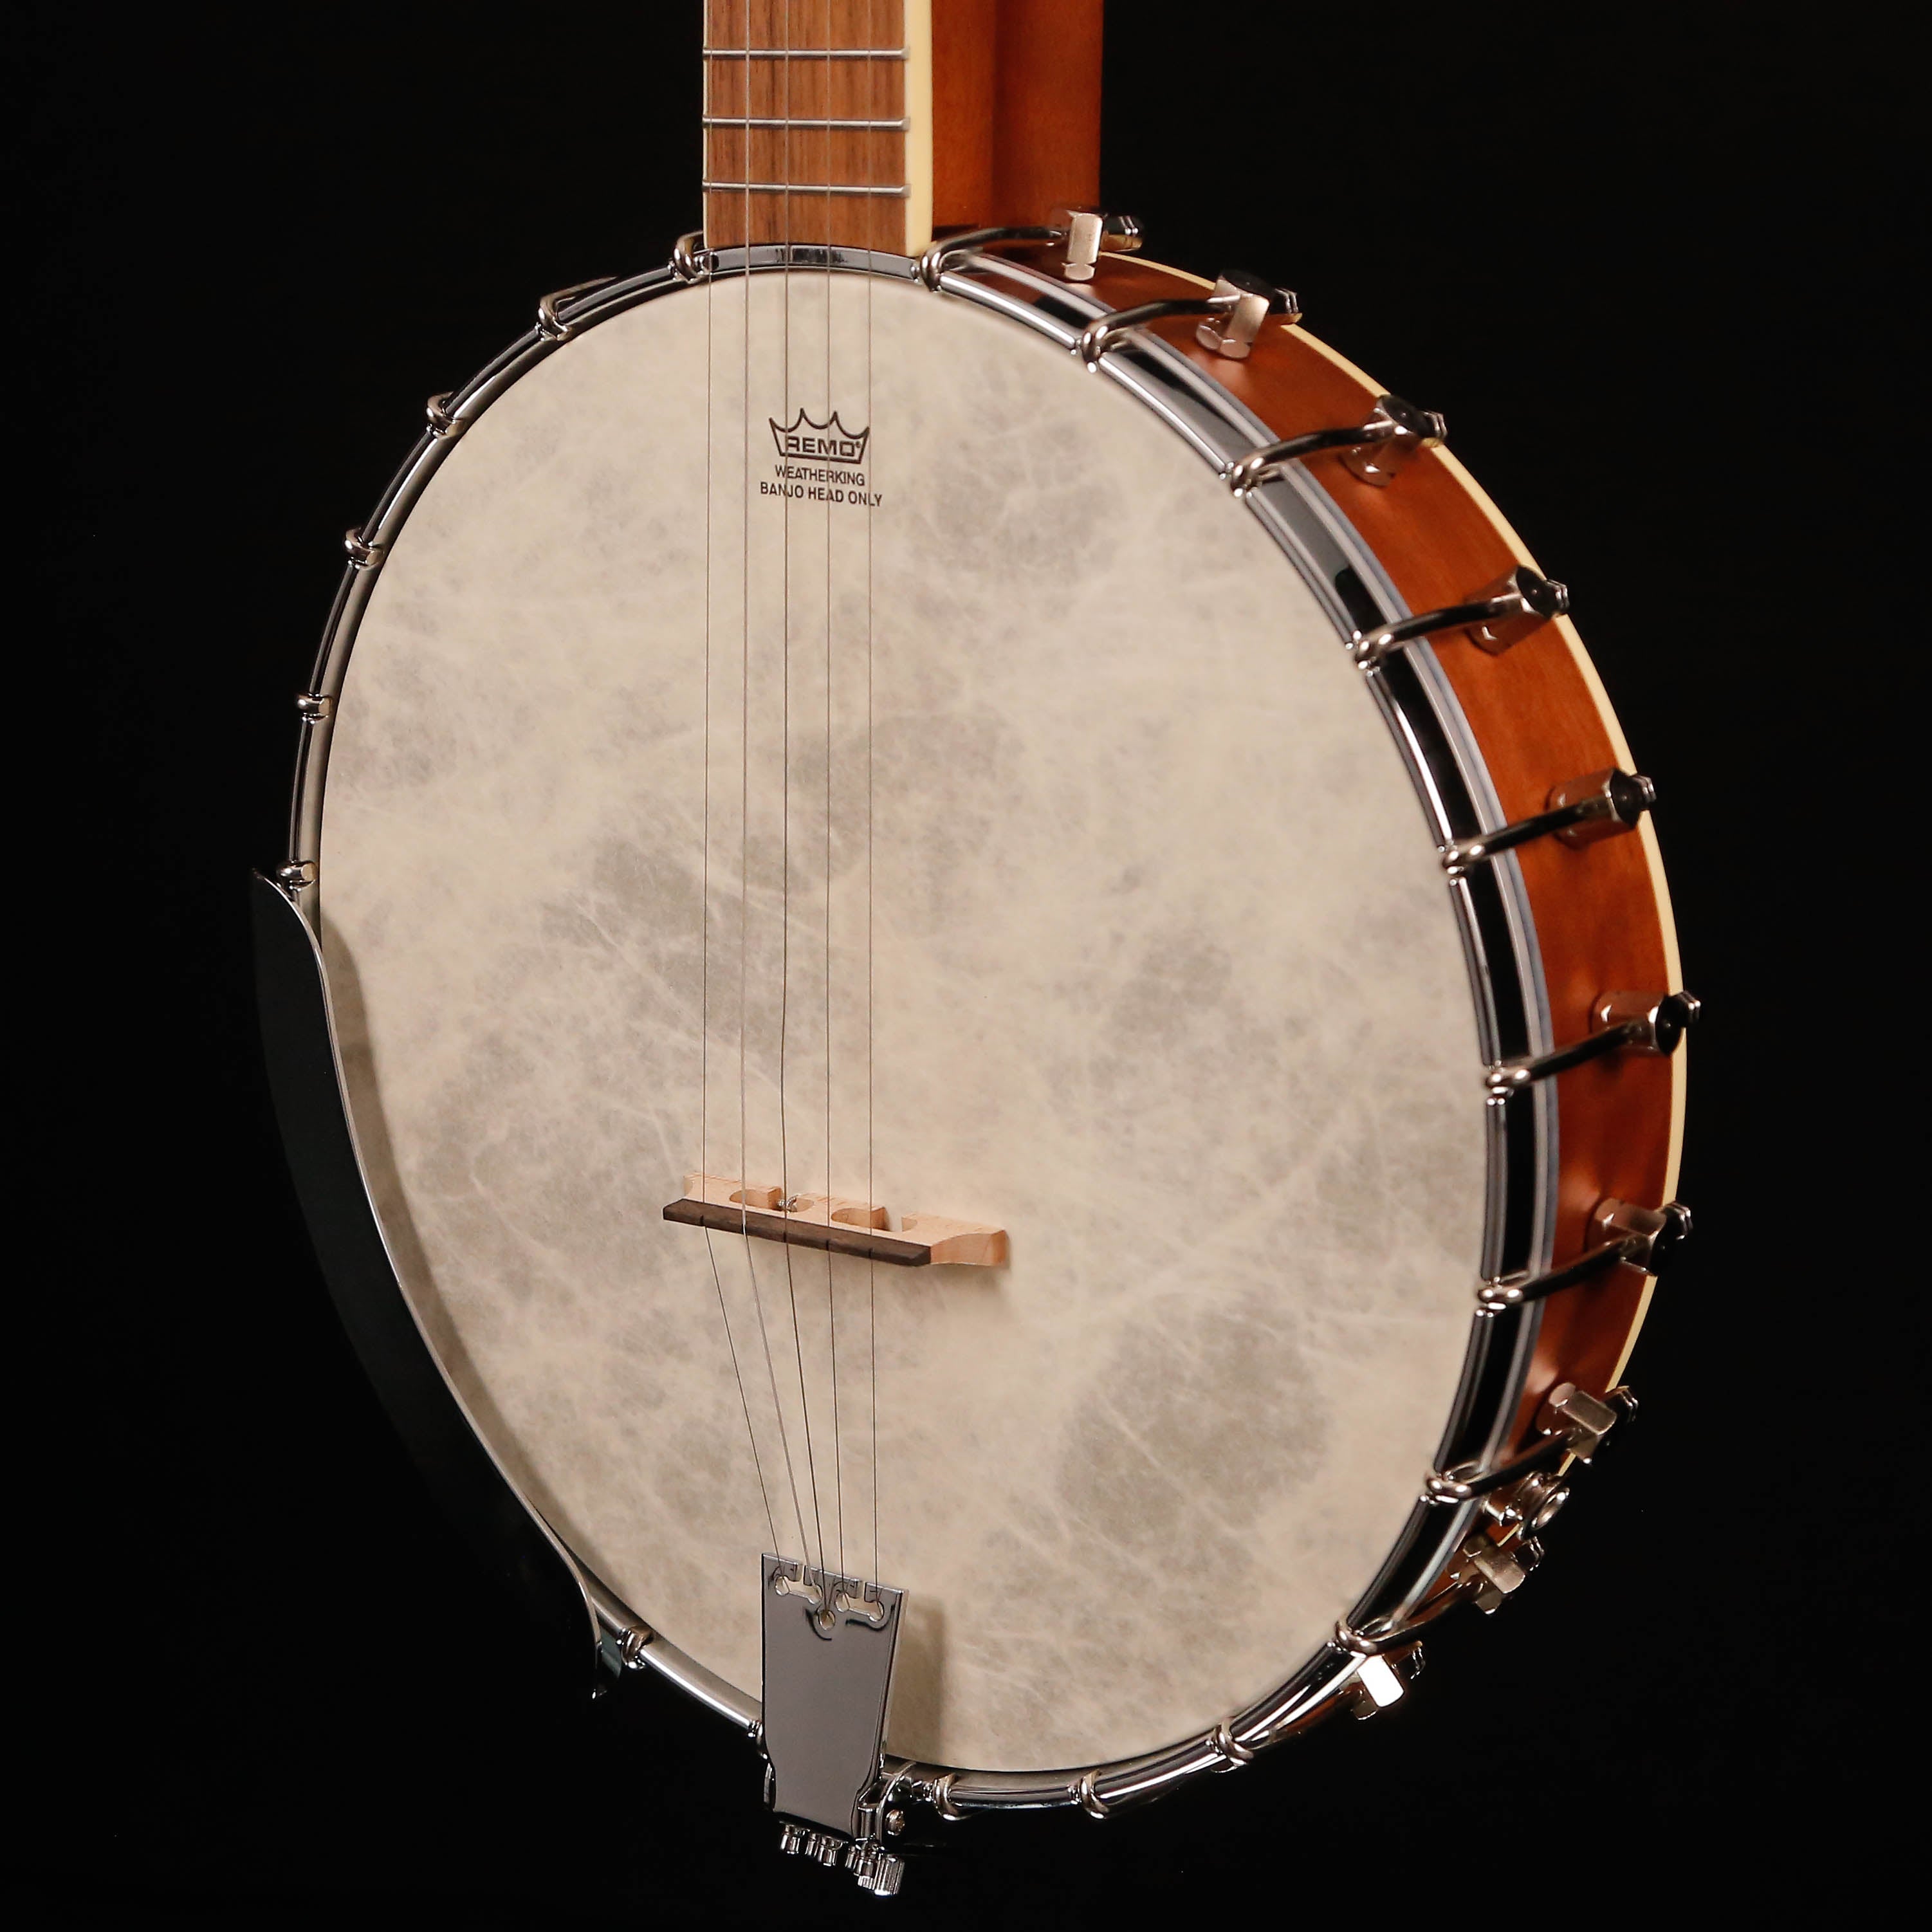 Fender PB-180E Acoustic-electric Banjo, Natural, Walnut Fb